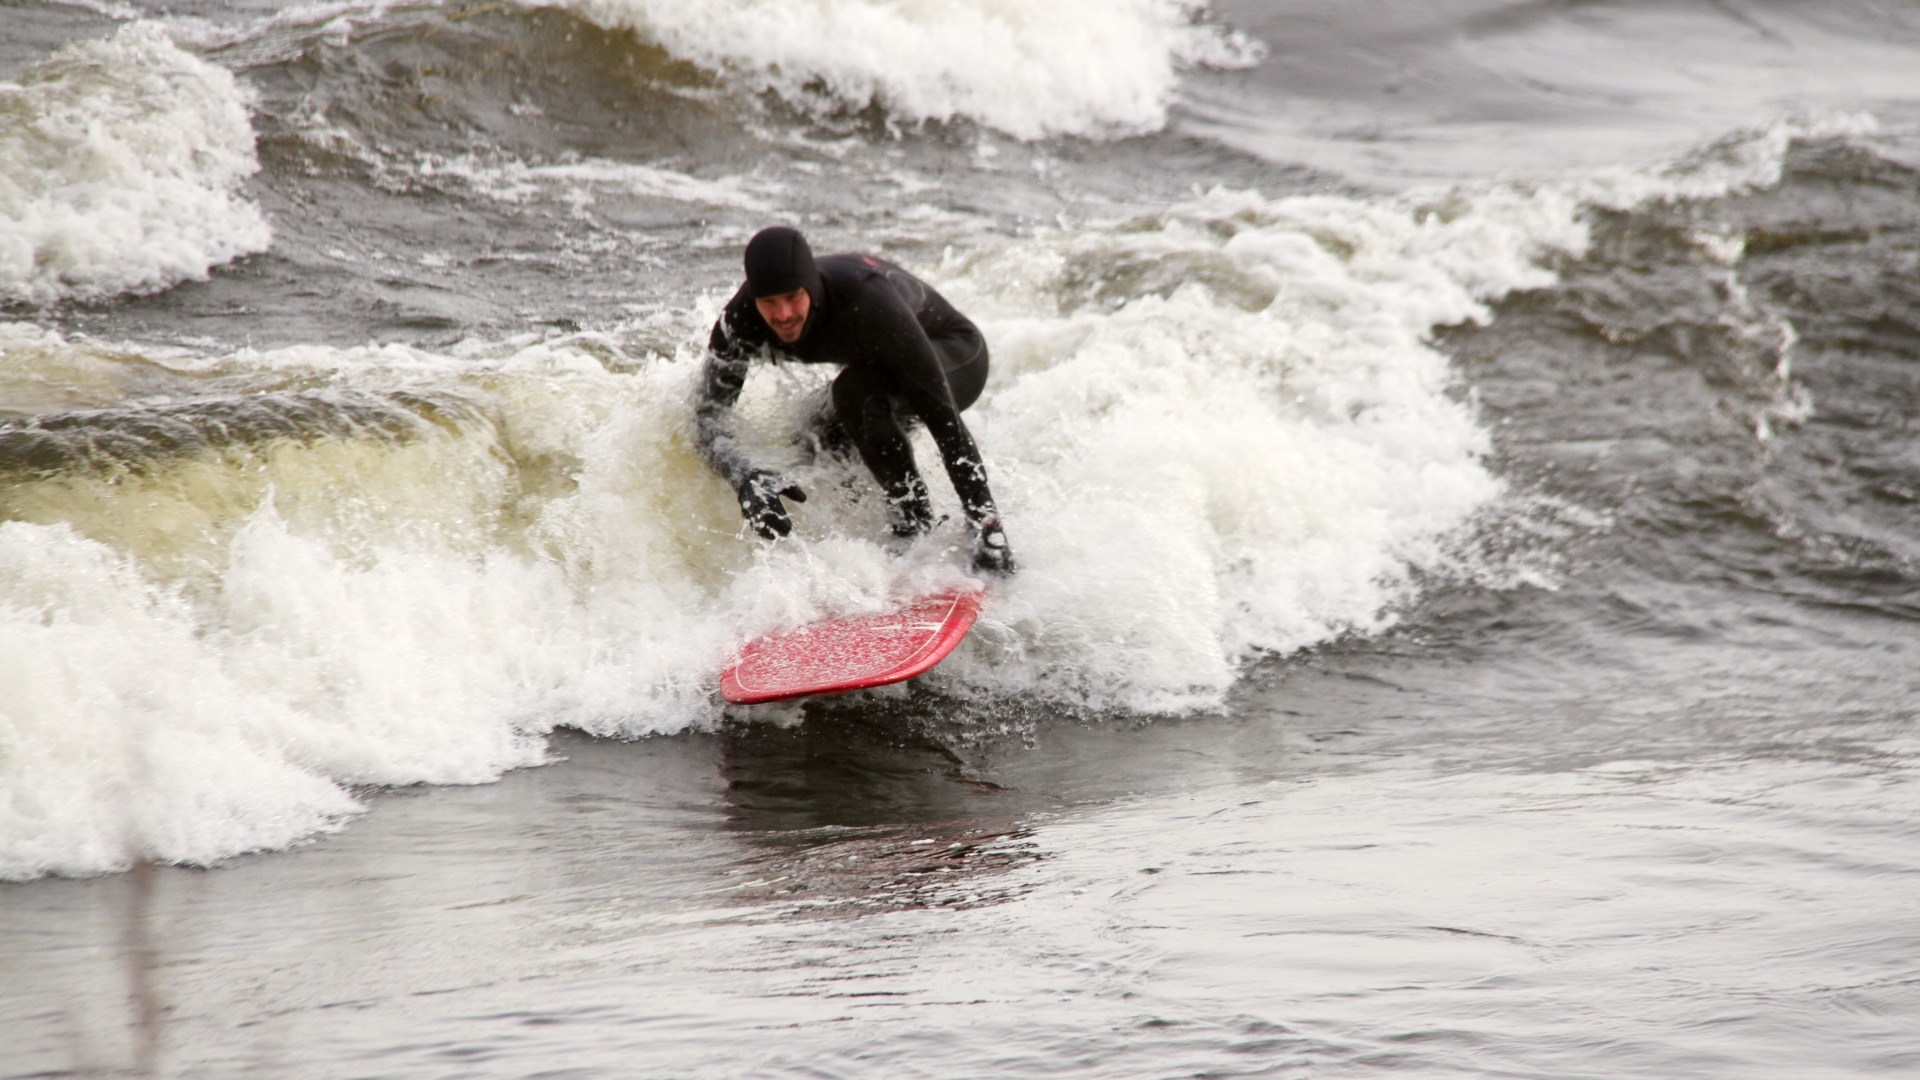 Le surf d’hiver à Montréal : Reportage d'Alexis Gacon
Le surf d’hiver à Montréal : Reportage d'Alexis Gacon